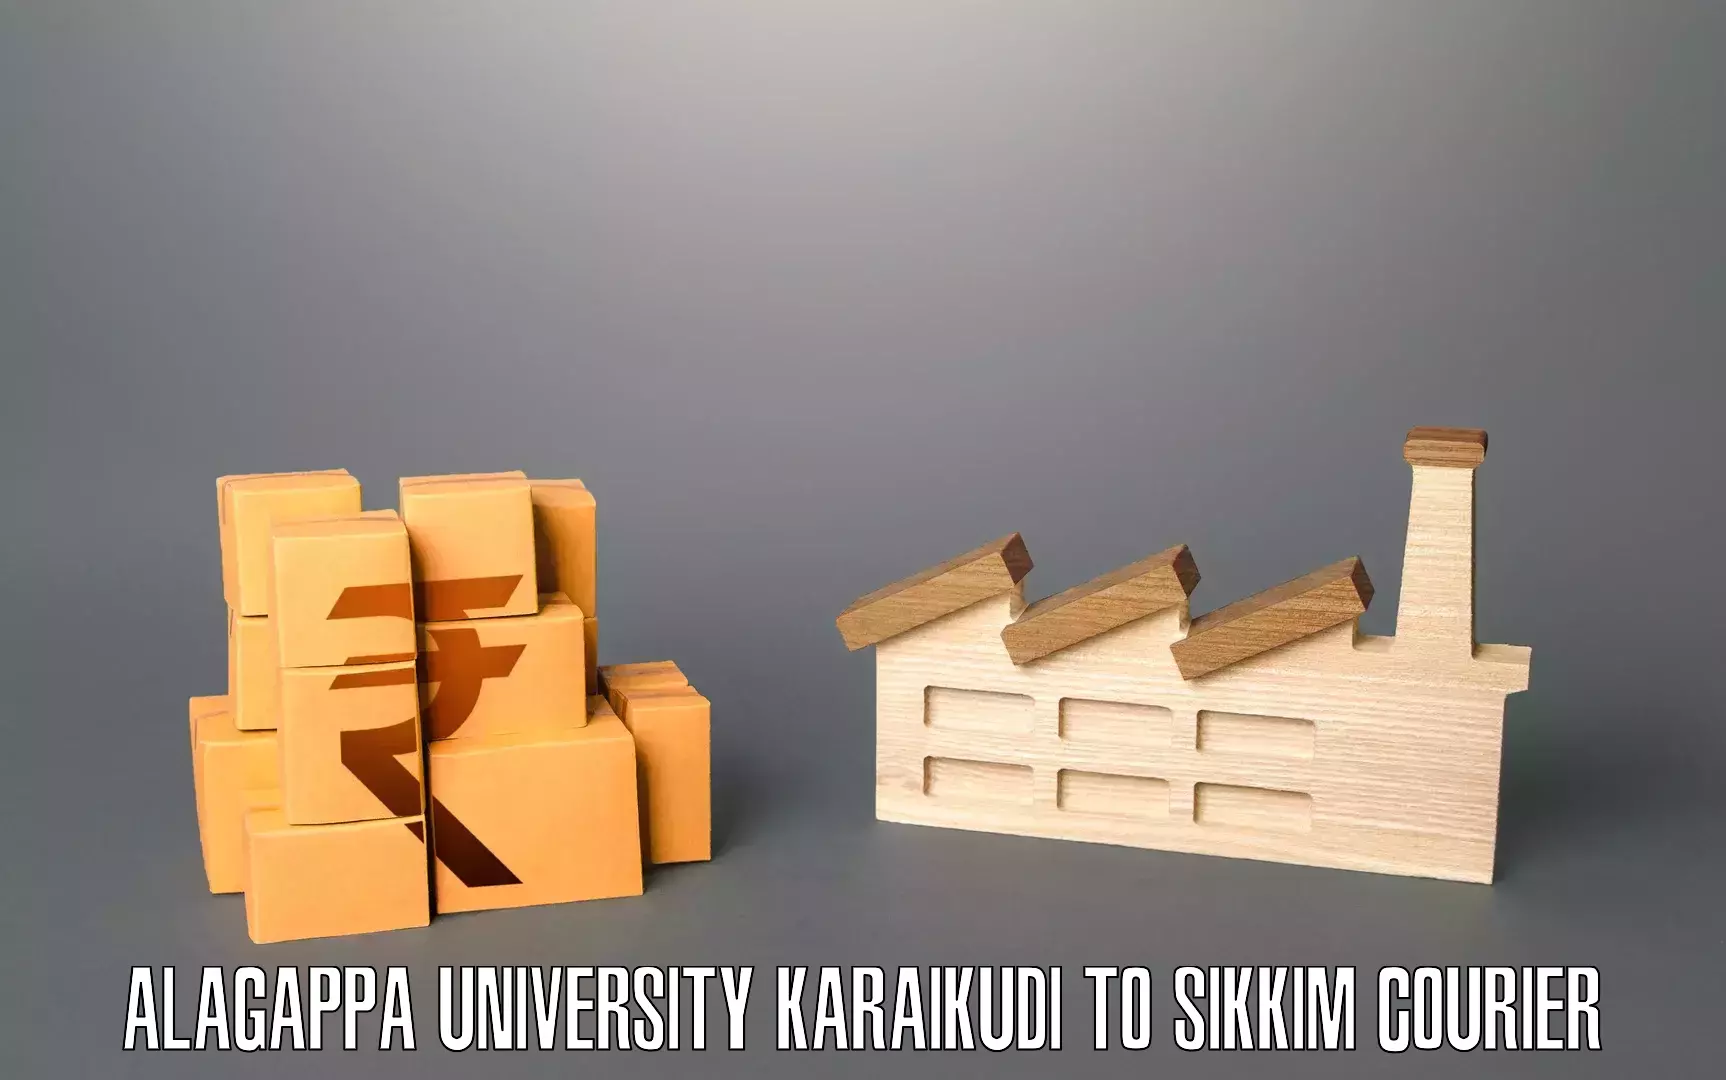 Residential furniture transport in Alagappa University Karaikudi to South Sikkim